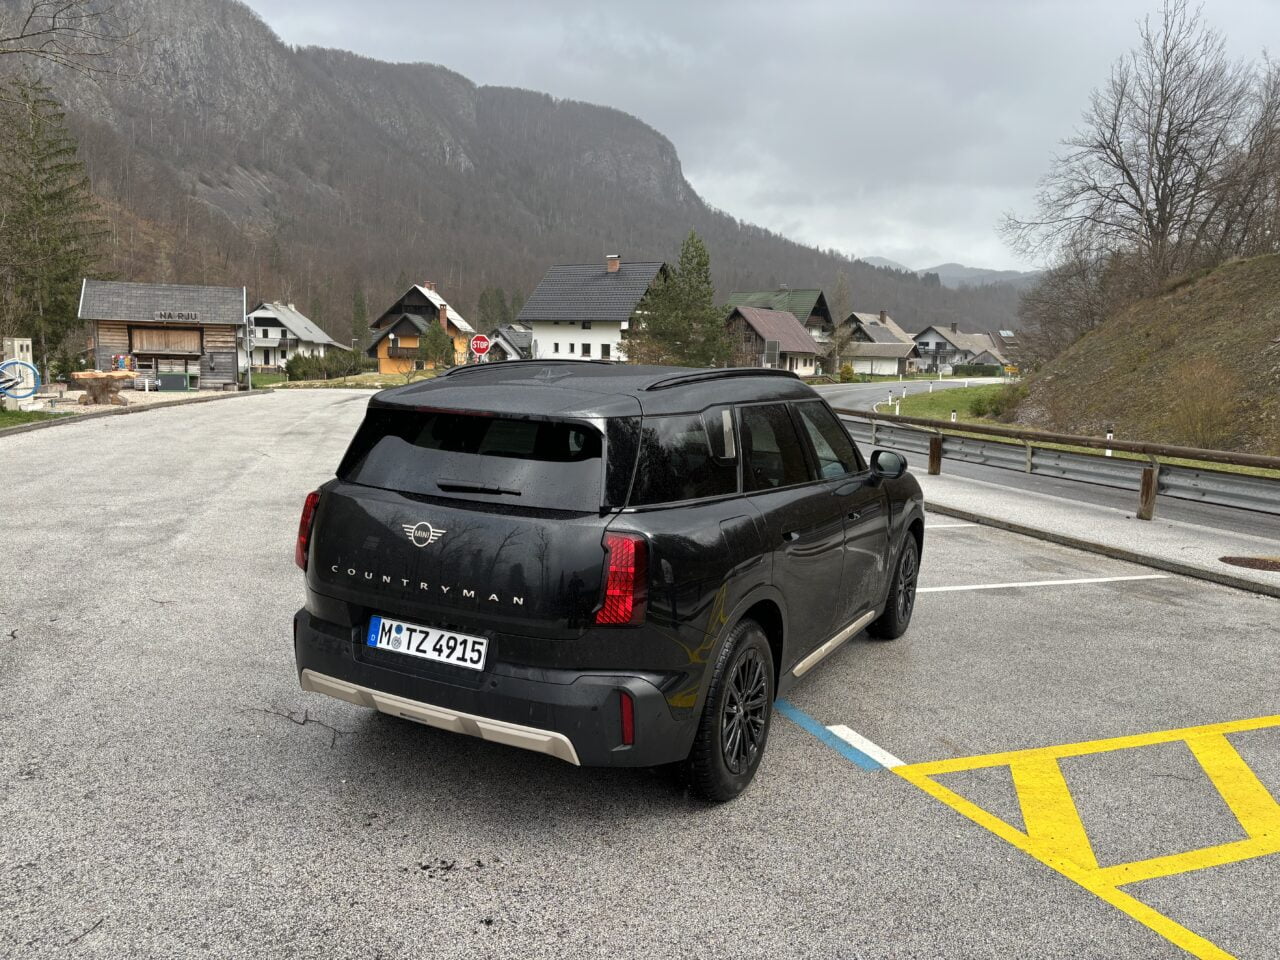 Czarny samochód marki Mini Countryman zaparkowany na poboczu drogi w górskiej scenerii, z widocznymi domami i szarym niebem w tle.